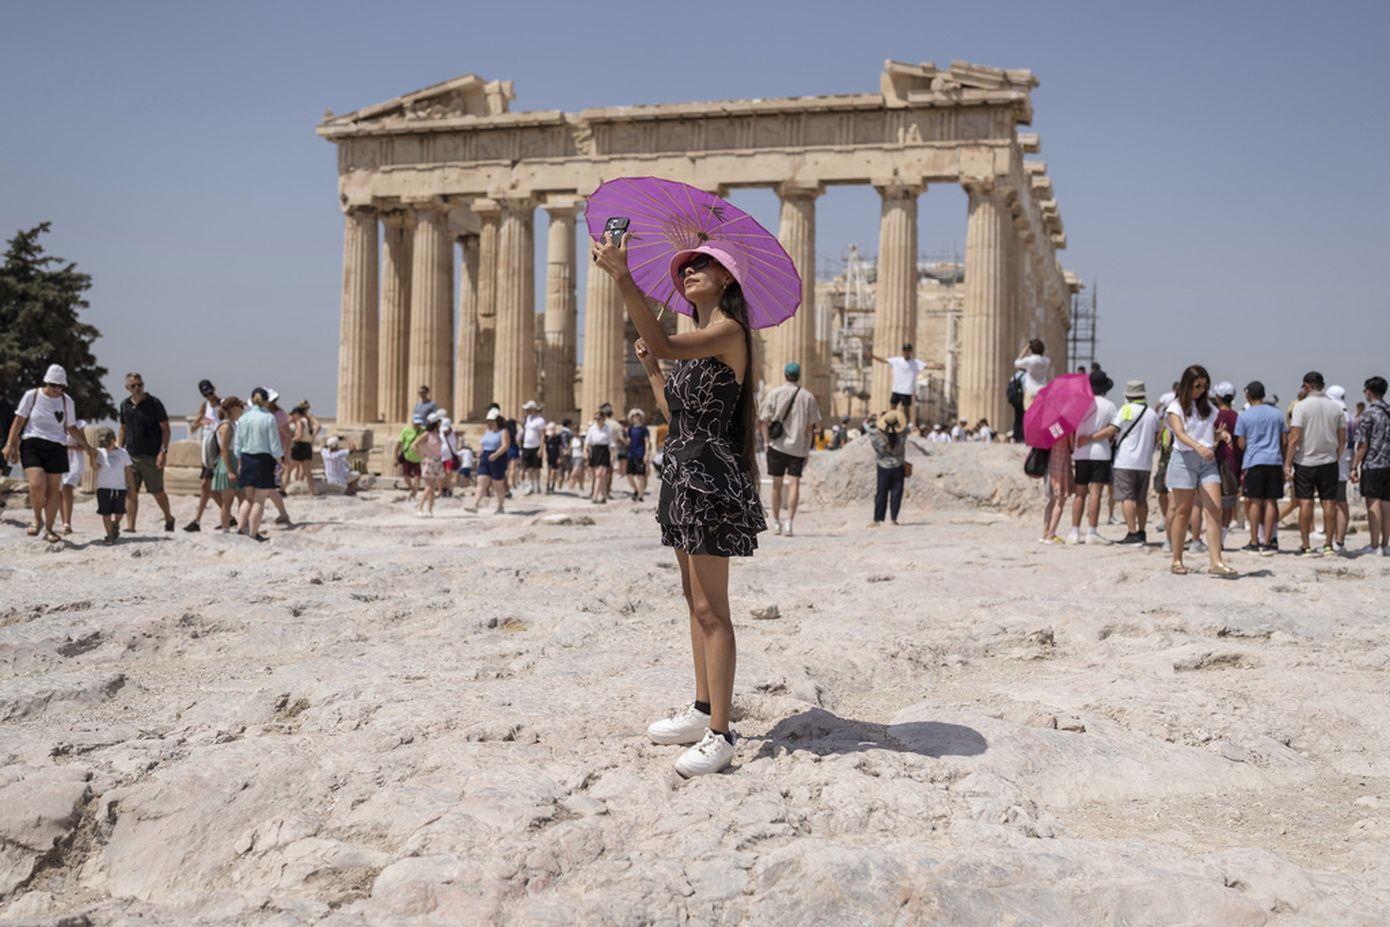 Τι ζητούν Γερμανοί, Άγγλοι, Γάλλοι και Ισπανοί από τις διακοπές τους στην Ελλάδα; – Ποιοι θέλουν χαλάρωση, ποιοι αναζητούν νέες εμπειρίες